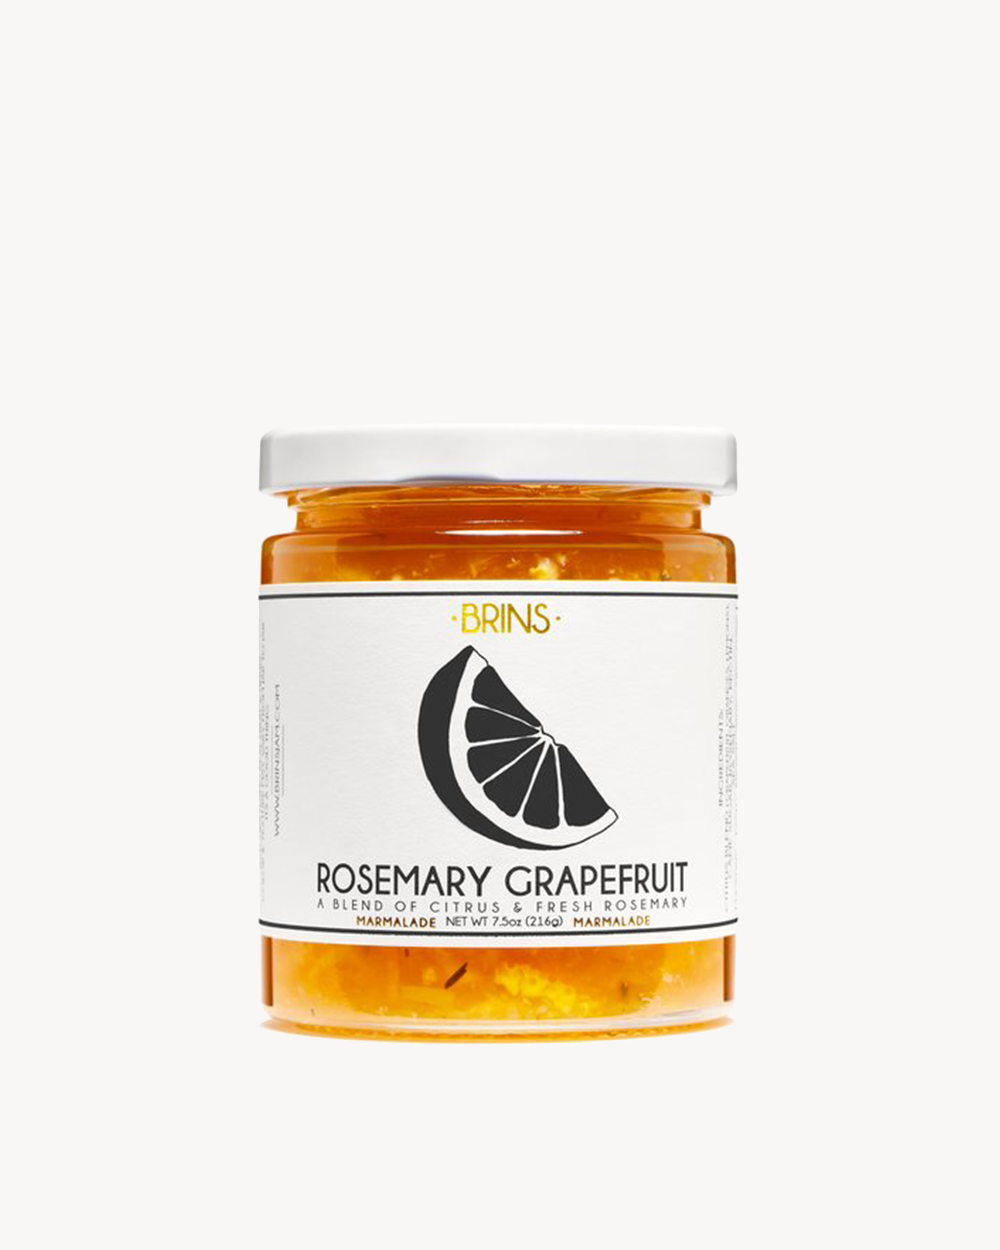 Rosemary Grapefruit Marmalade 7.5oz